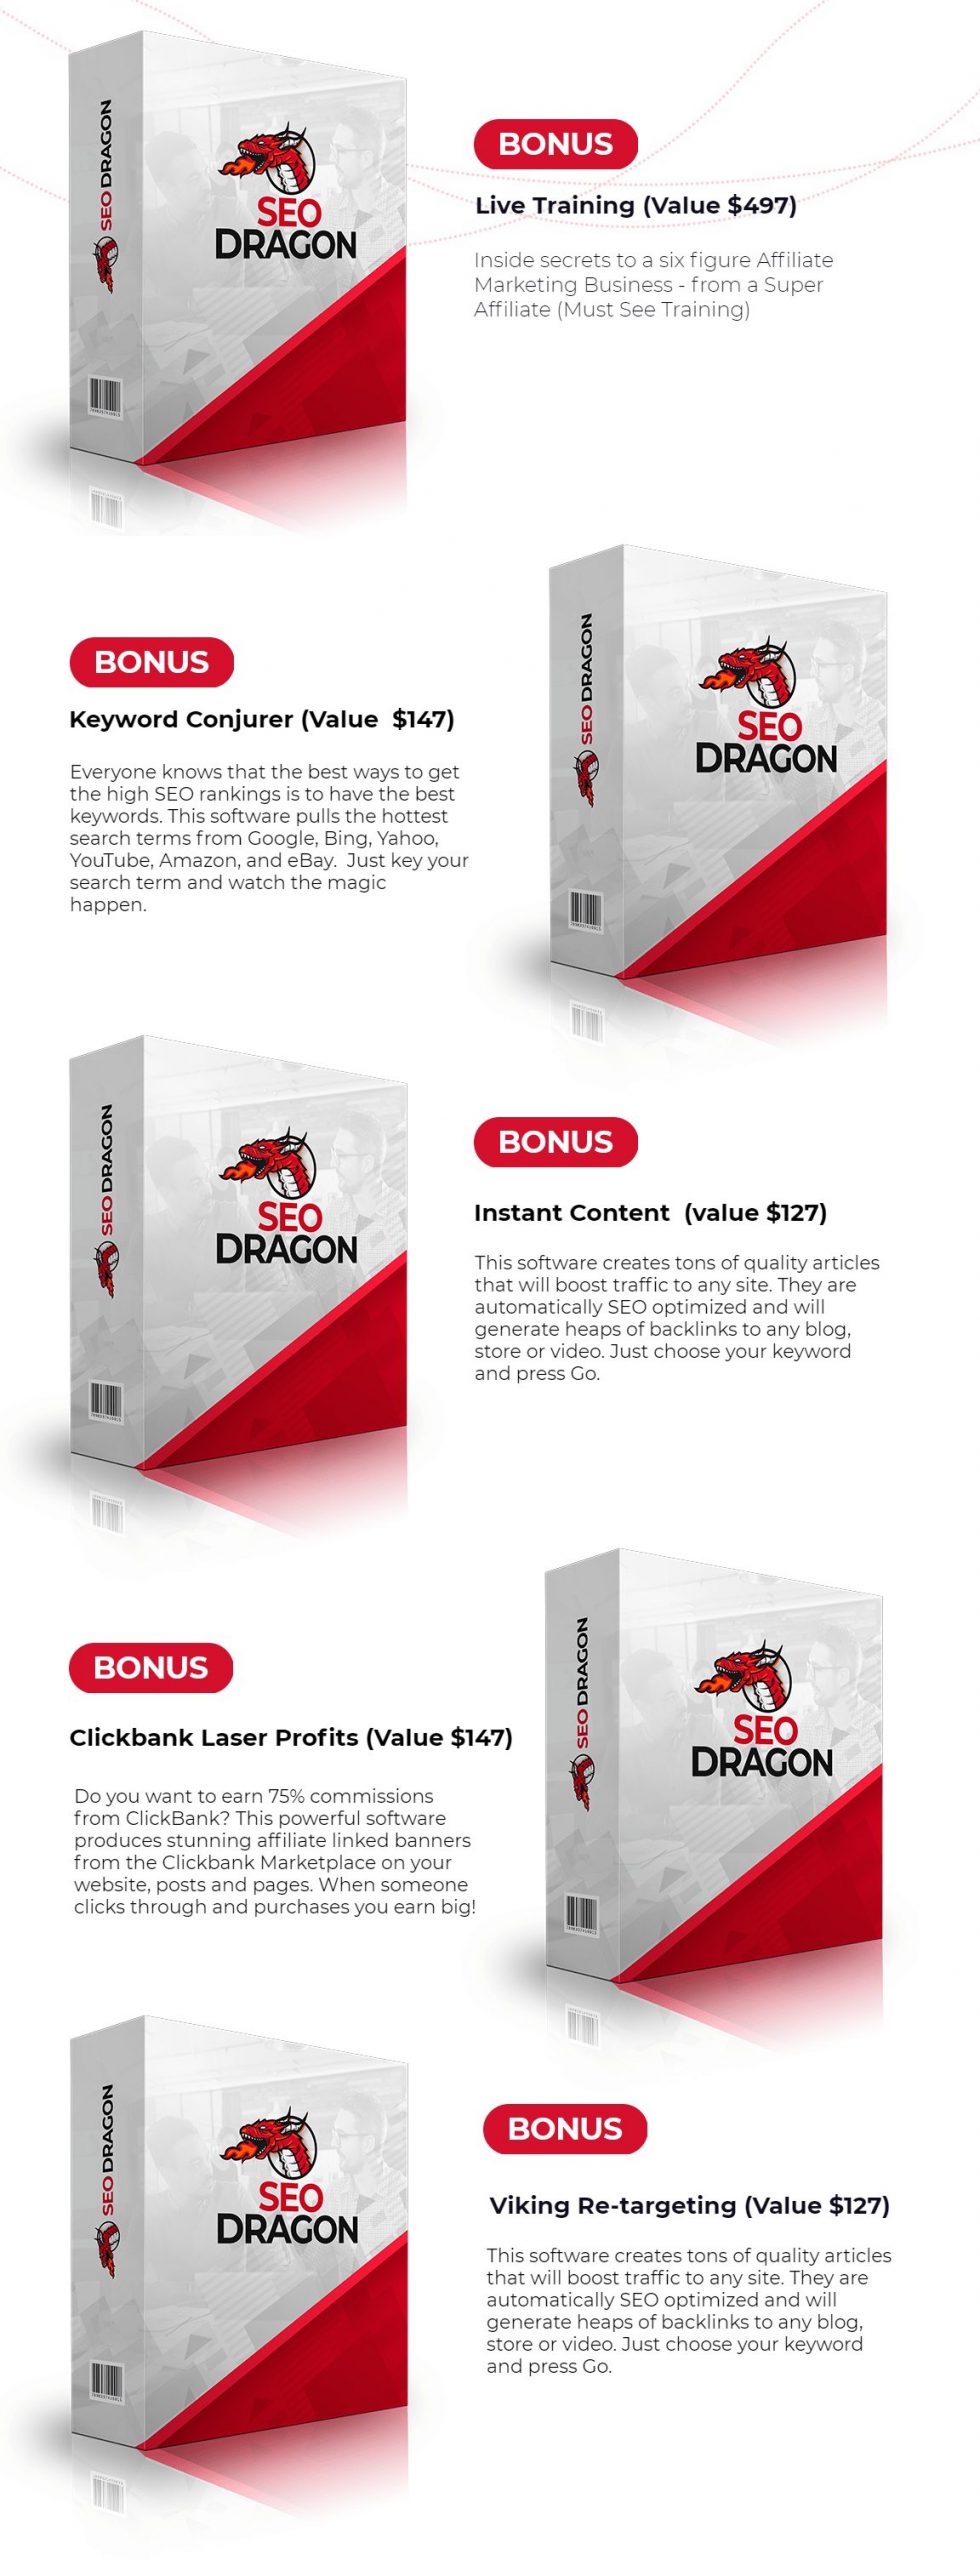 SEO Dragon bonus